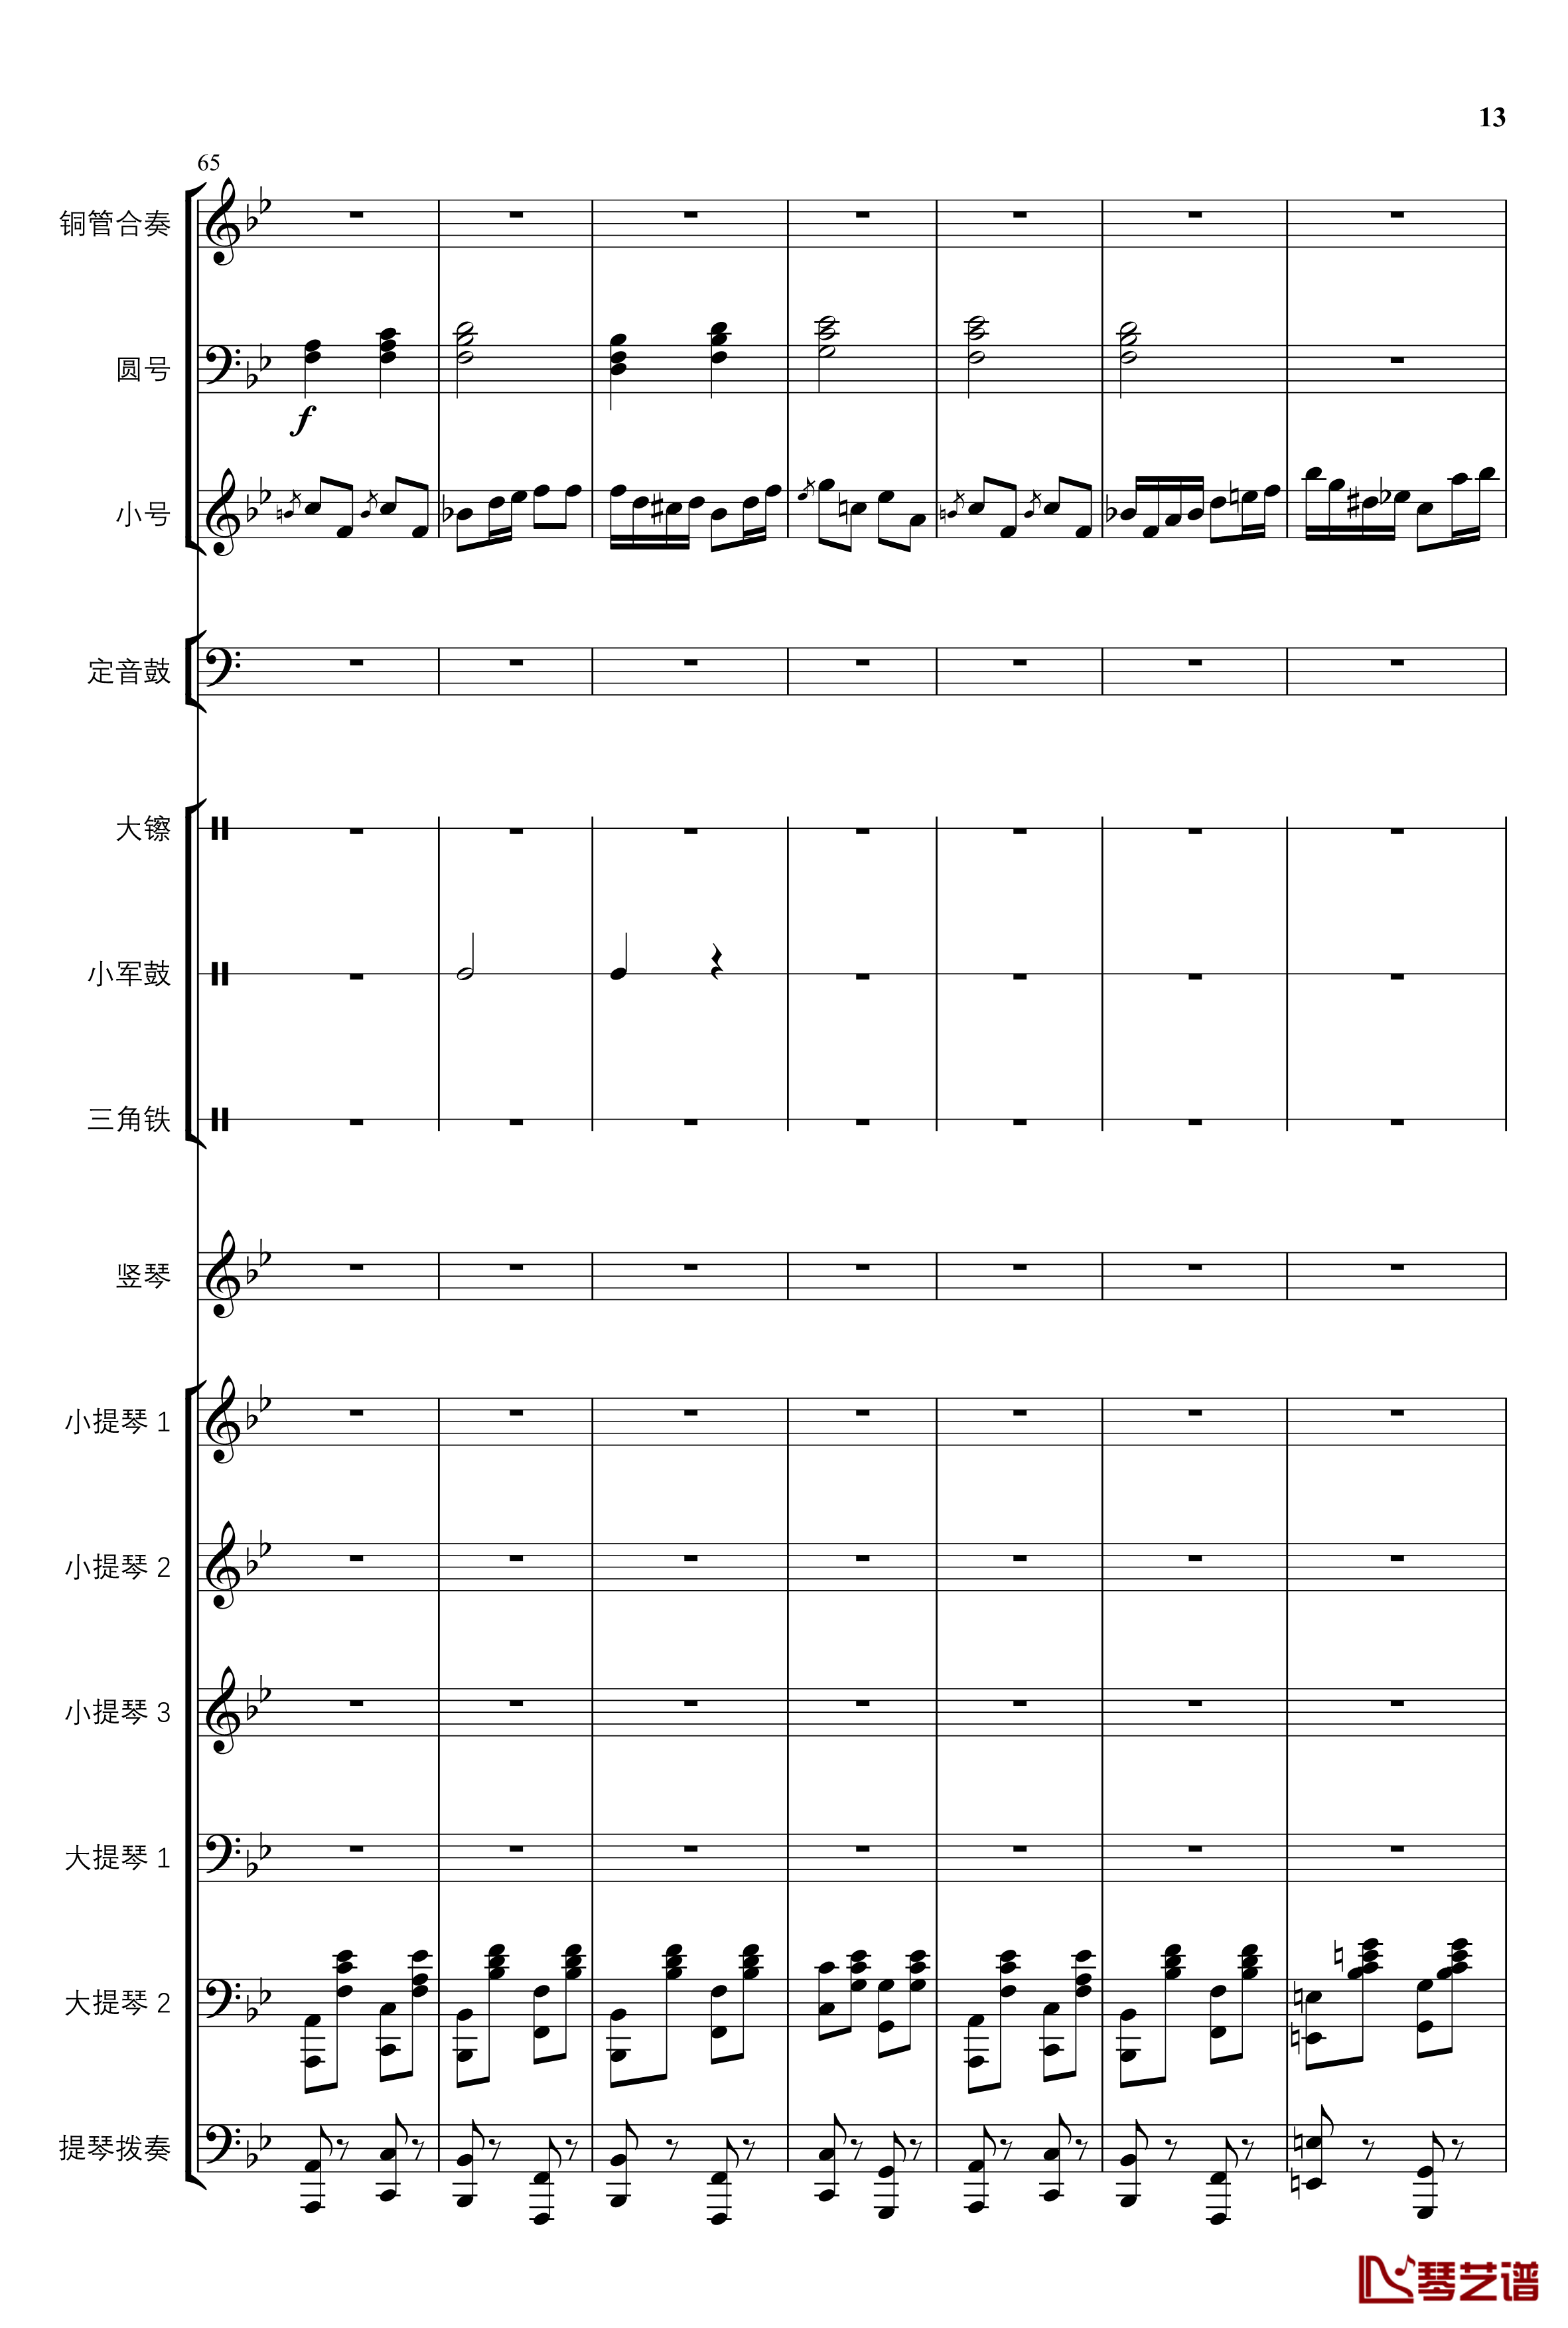 2013考试周的叙事曲钢琴谱-管弦乐重编曲版-江畔新绿13